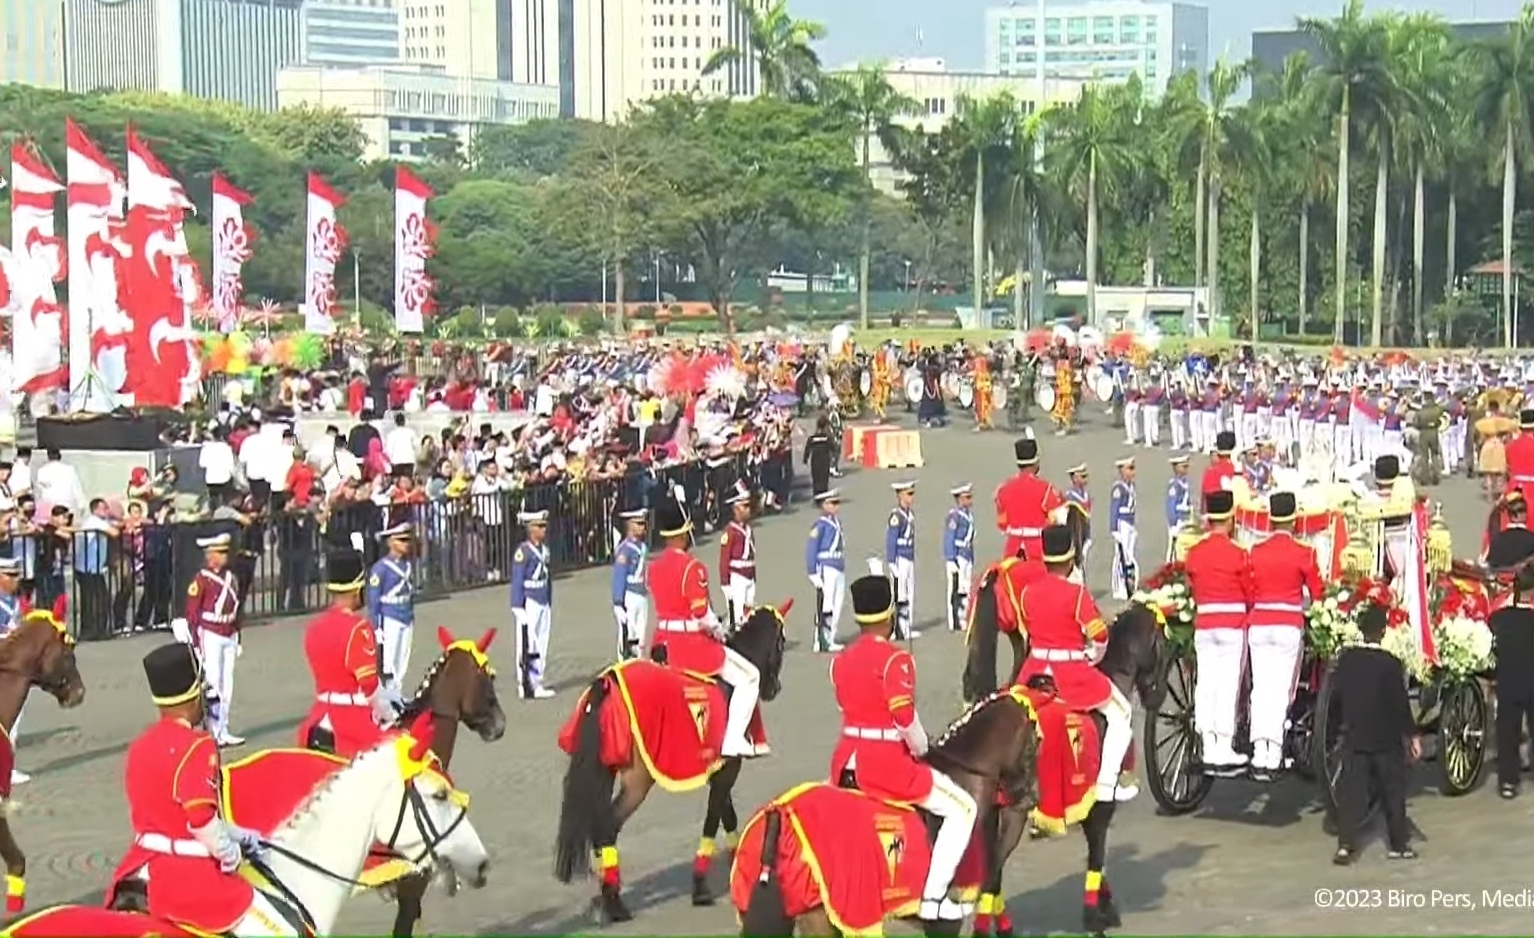 Siaran Langsung: Upacara Peringatan Detik-detik Proklamasi Kemerdekaan Indonesia Bisa Dilihat di Sini!